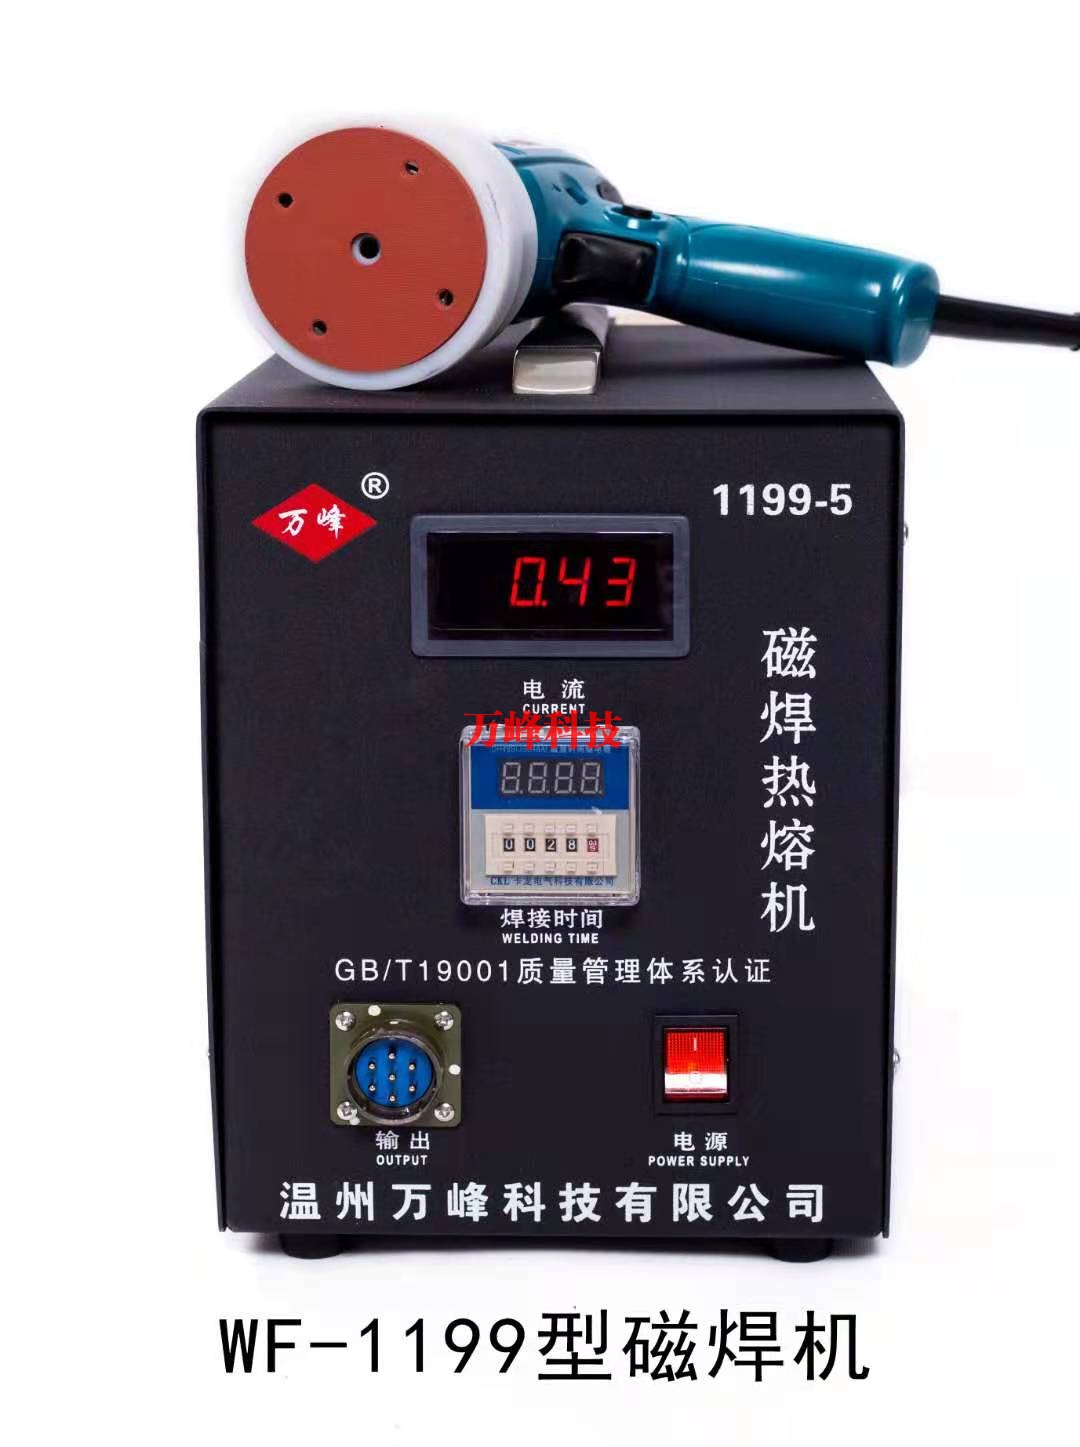 吴中WF-1199型磁焊热熔机